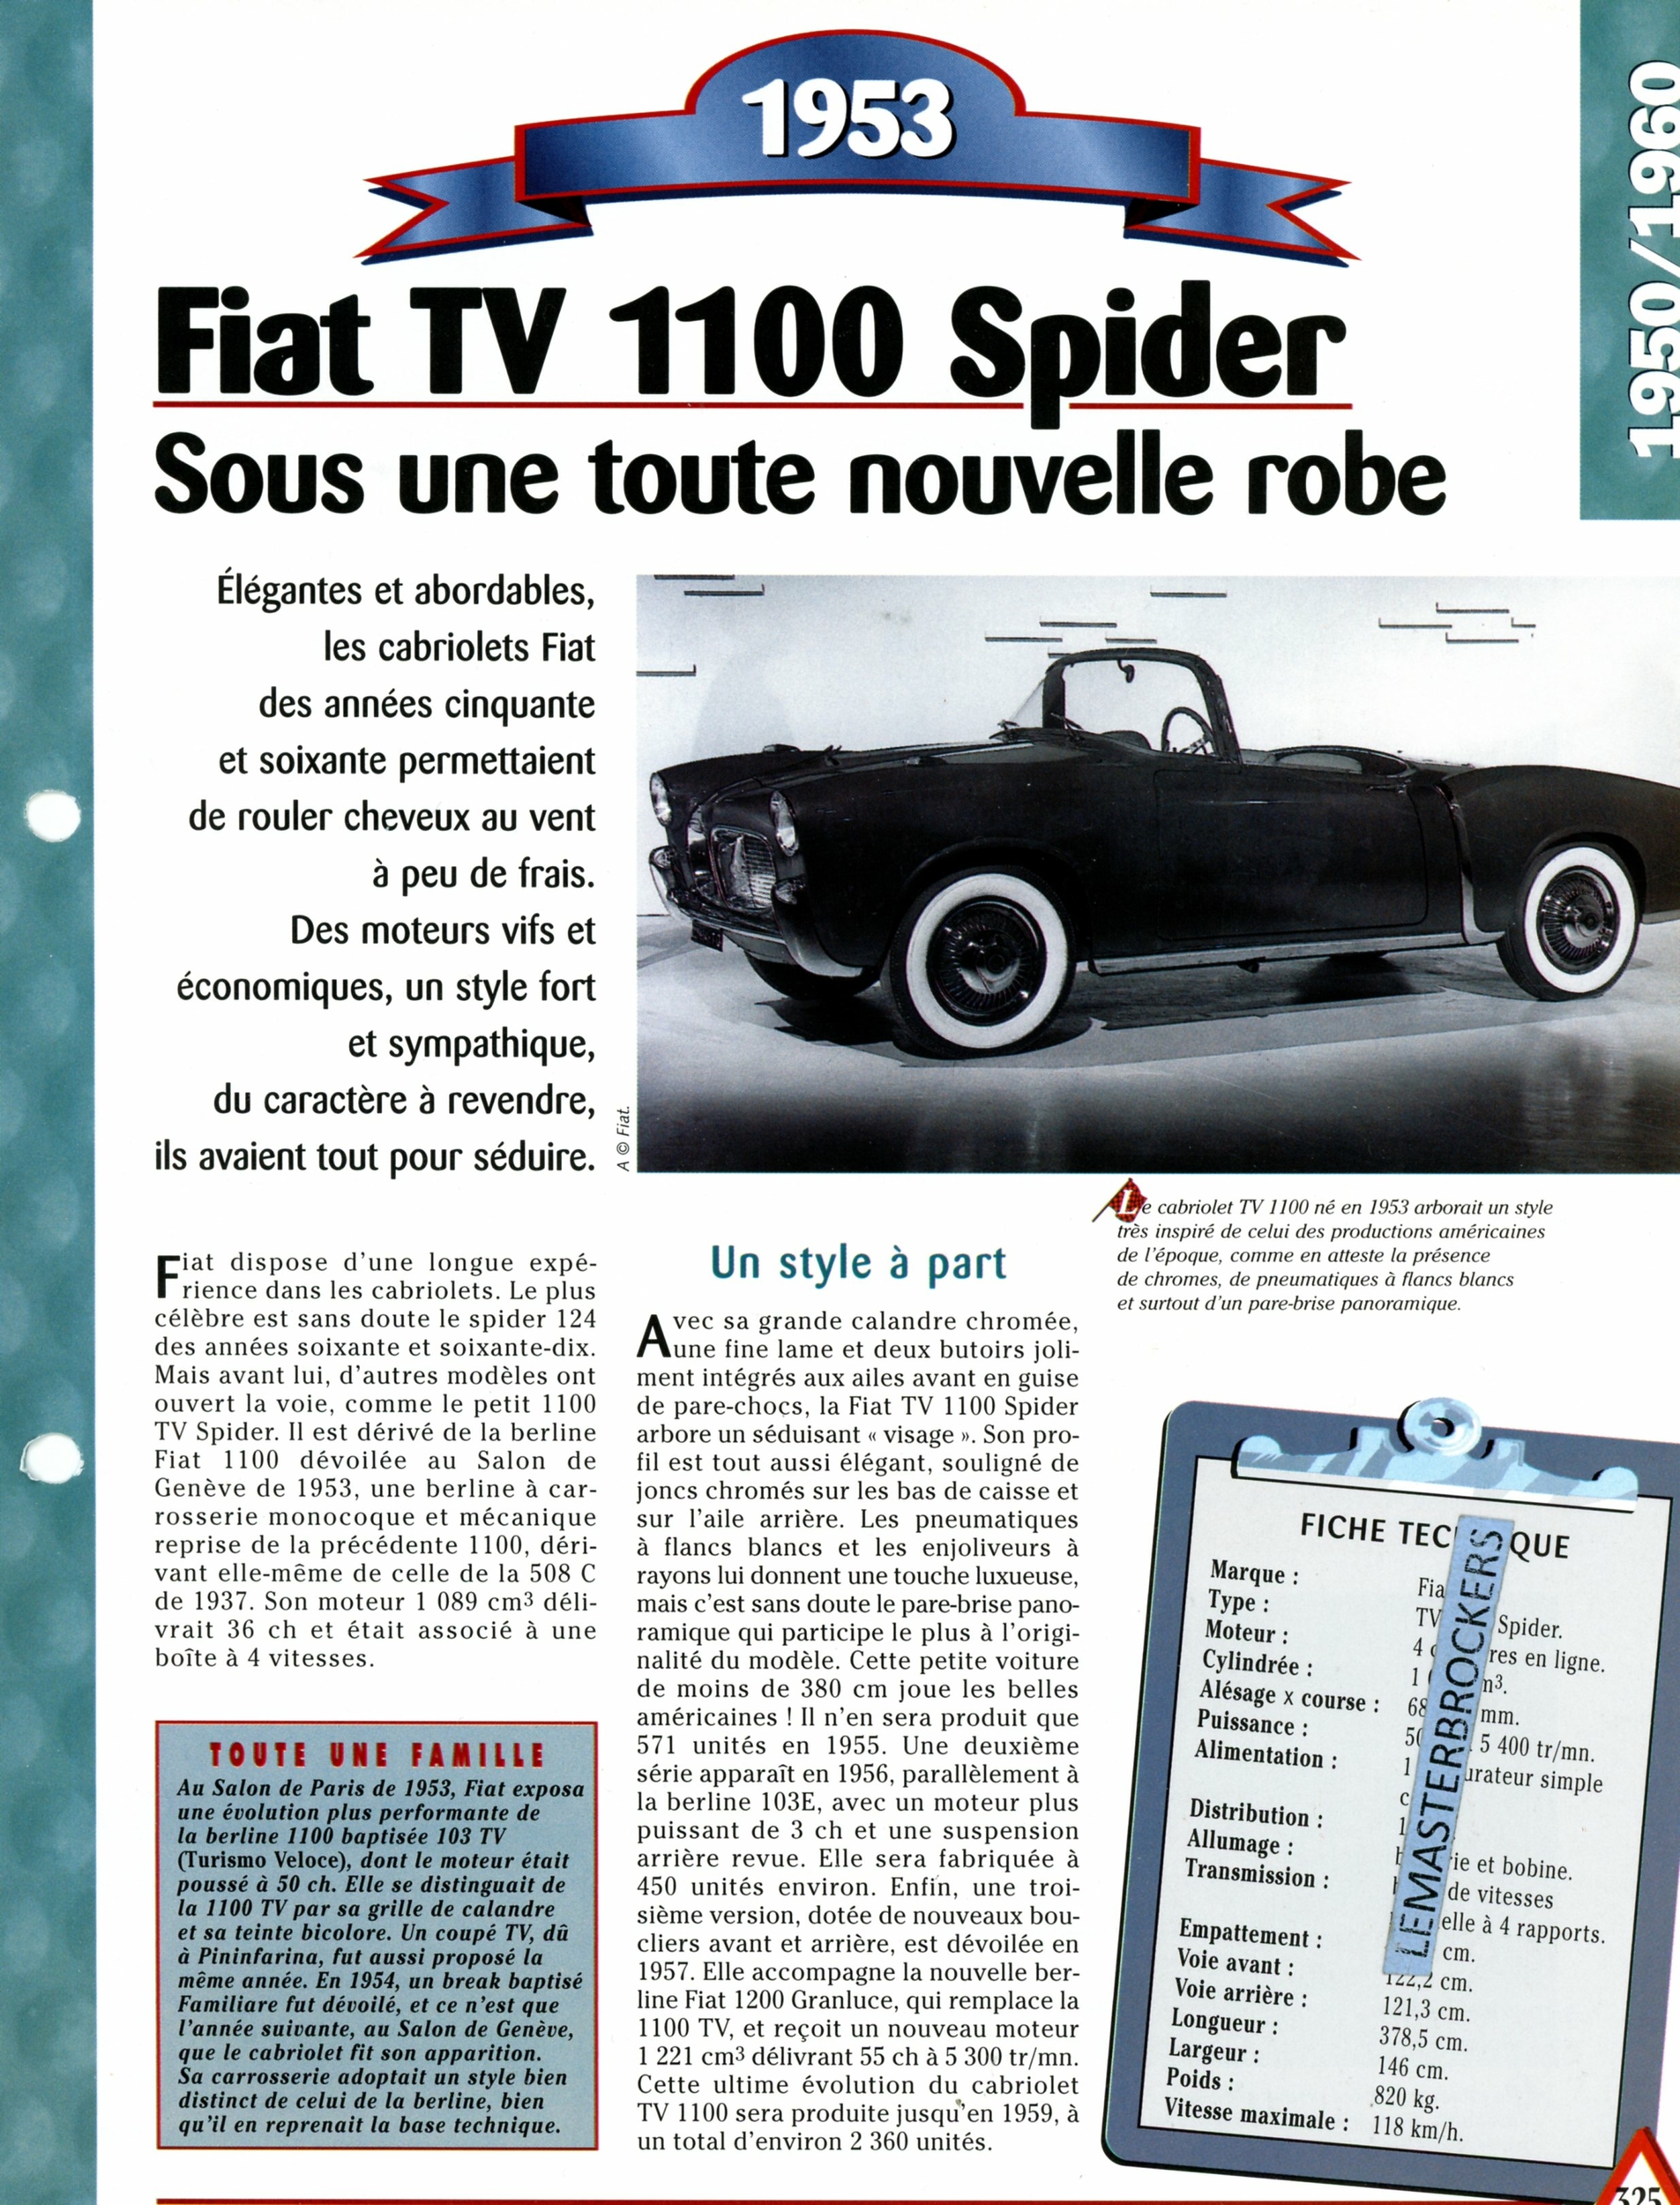 FIAT TV 1100 SPIDER 1953 FICHE AUTO HACHETTE - FICHE TECHNIQUE